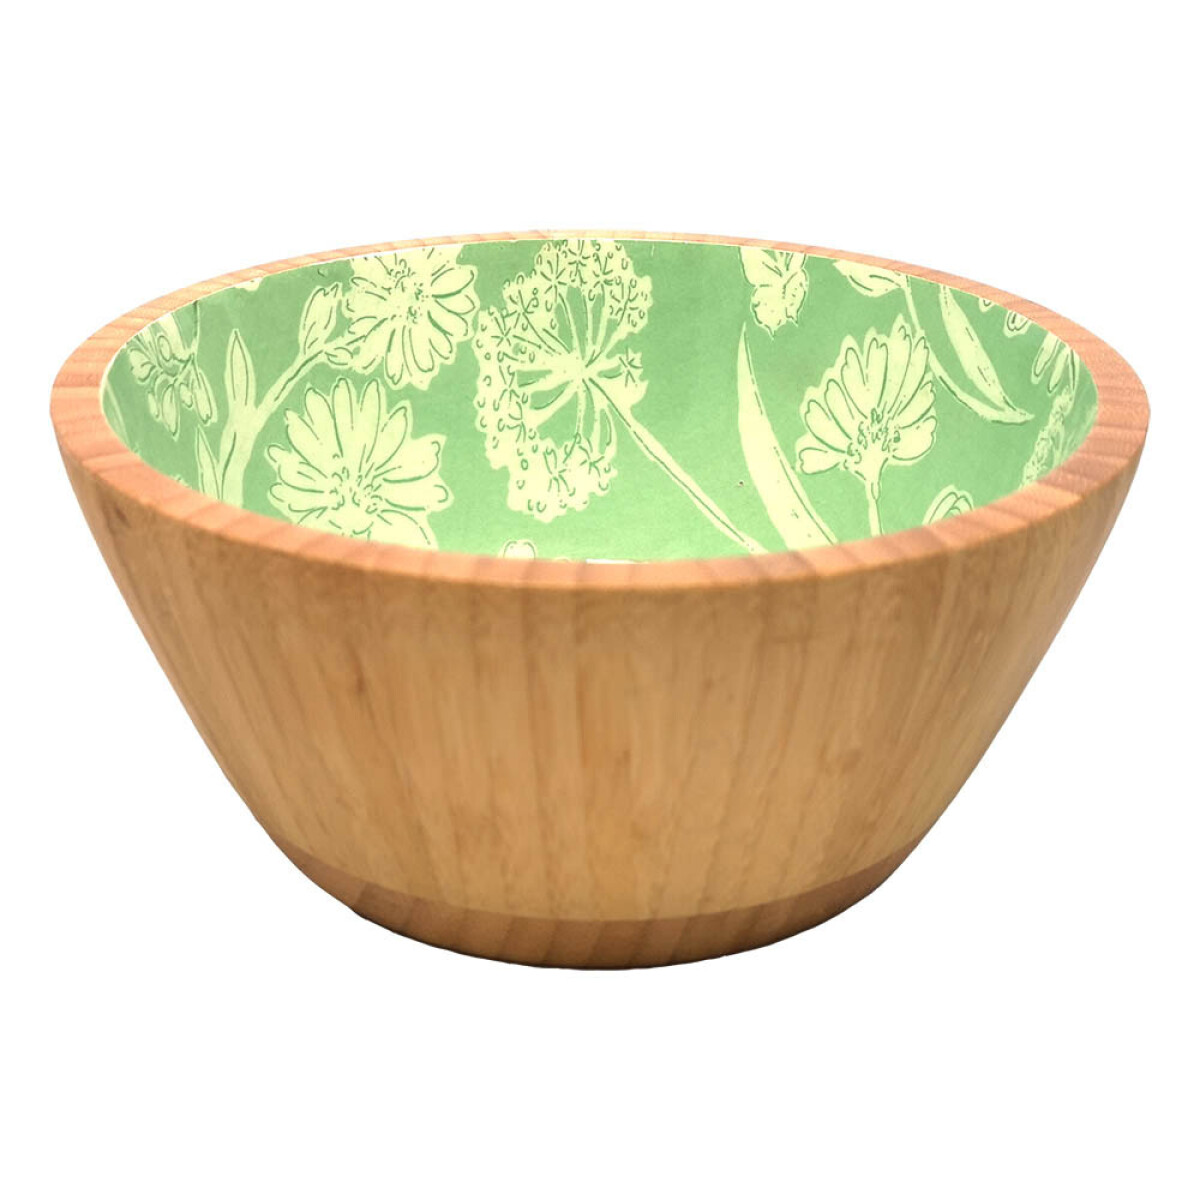 Bowl de Madera de 20,5 cm - Varios Diseños - Pajaros Verde 